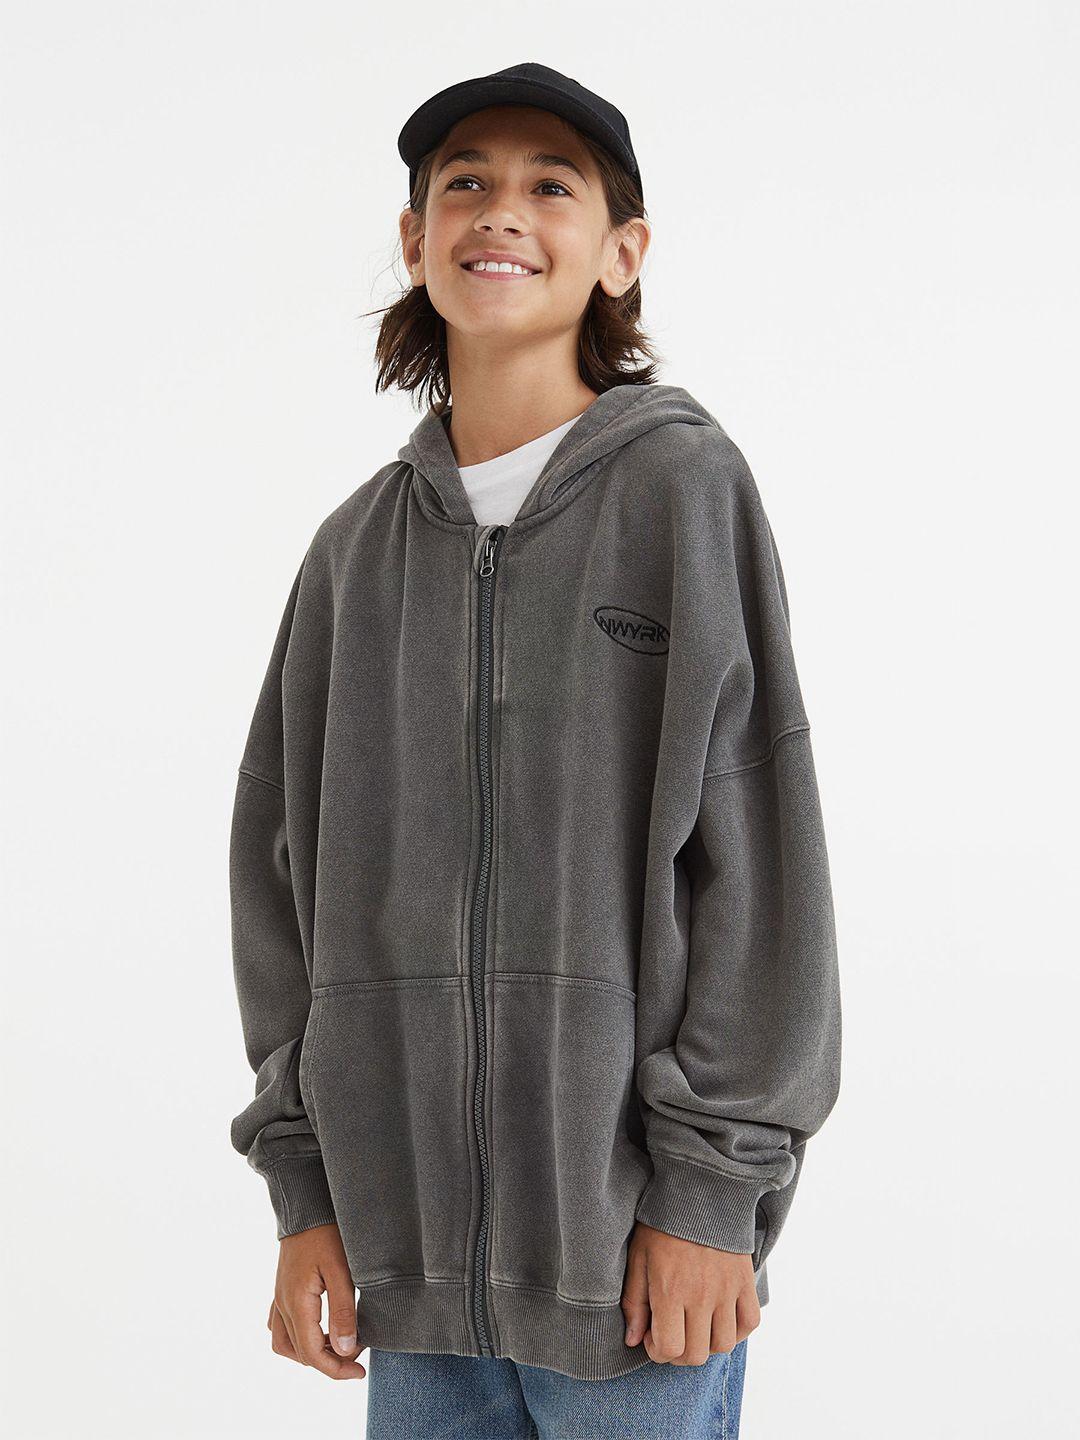 h&m boys grey solid zip-through hoodie